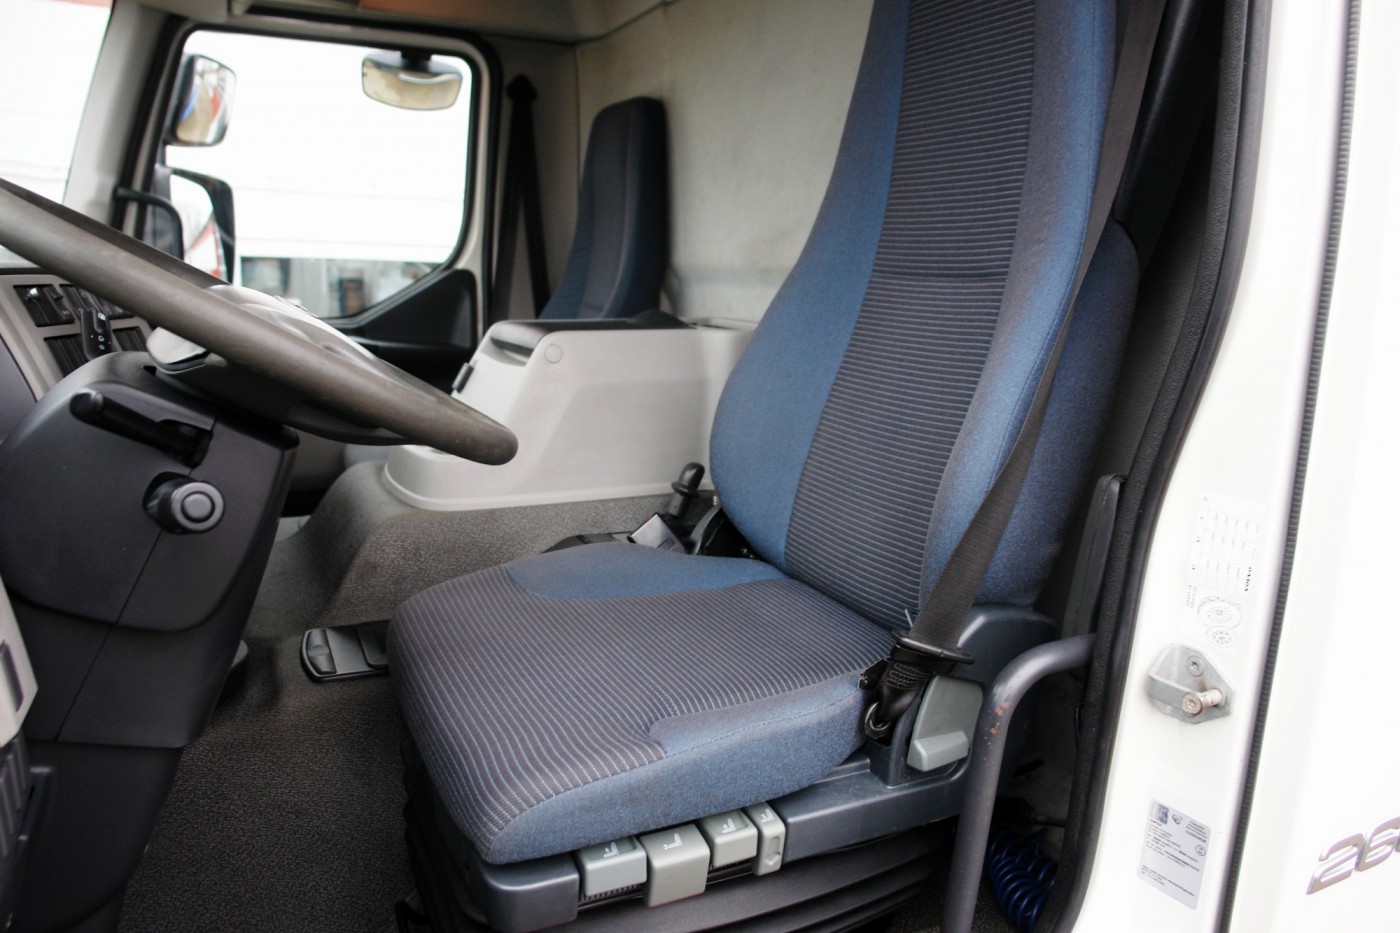 Volvo FE 260 camion per trasporto gas ADR Sospensione pneumatica completa Retarder Aria condizionata EURO5